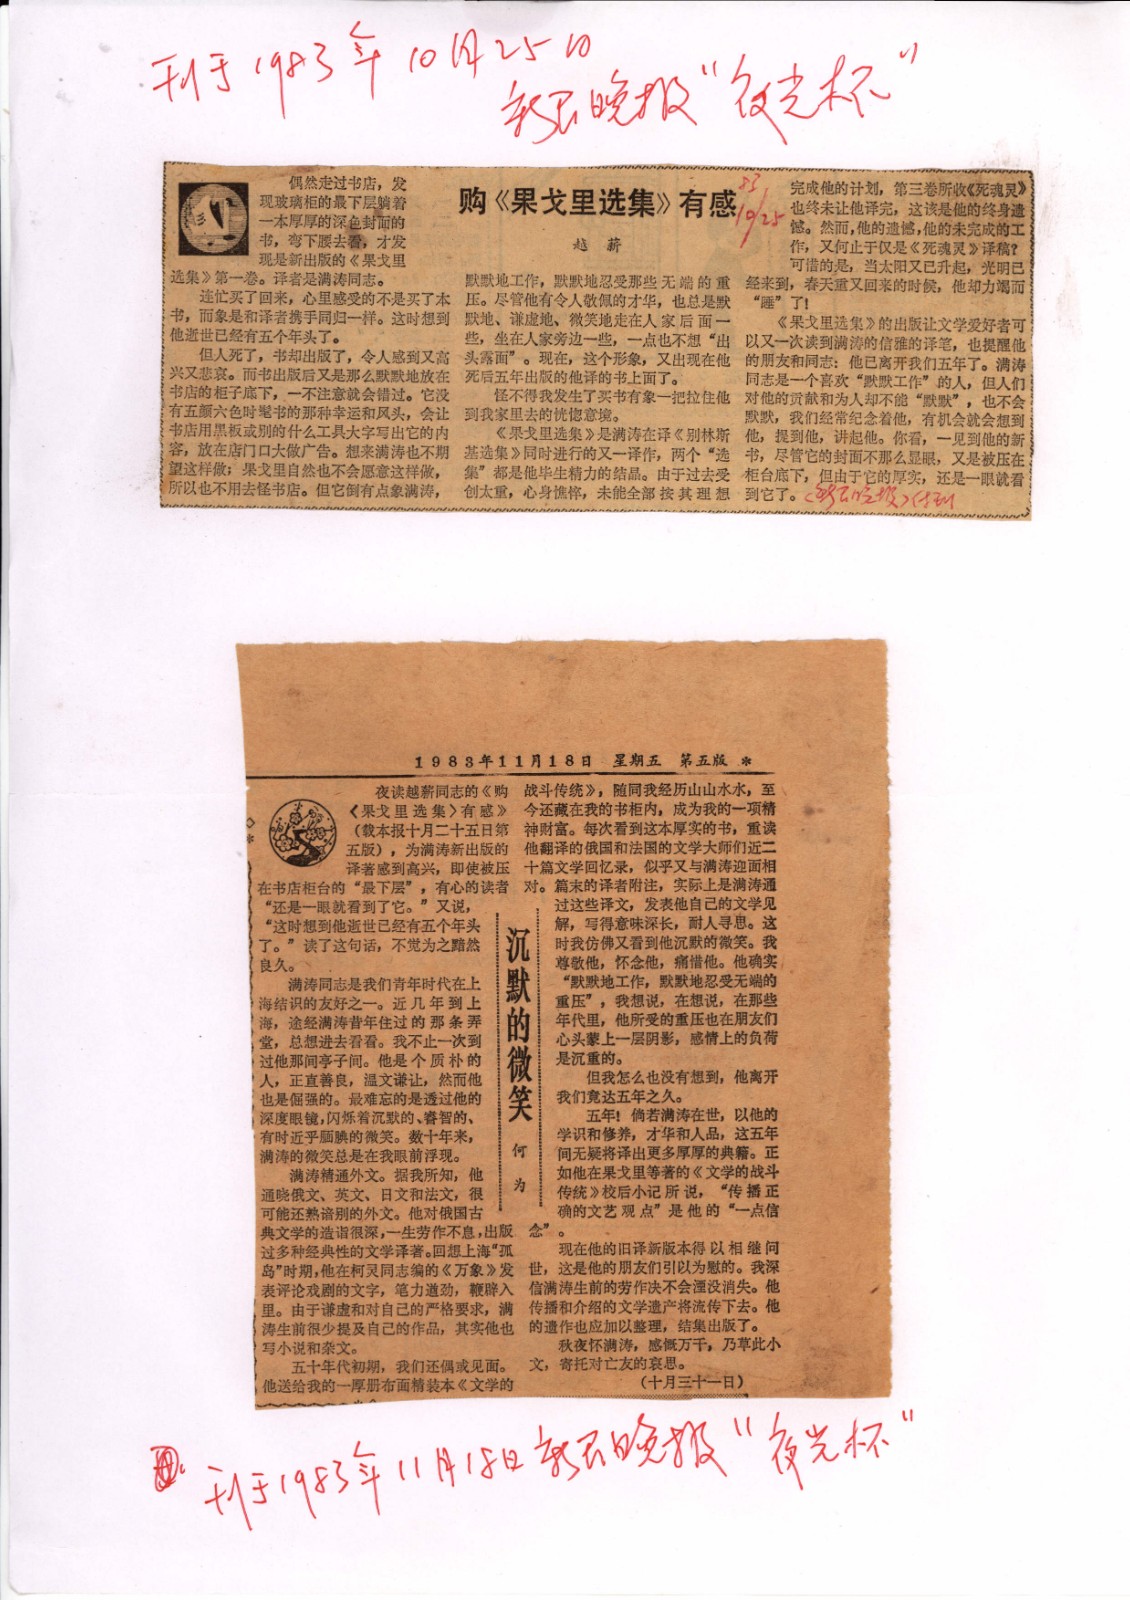 1983年10月25日、1983年11月18日新民晚报夜光杯副刊分别刊登的回忆满涛文章.jpg